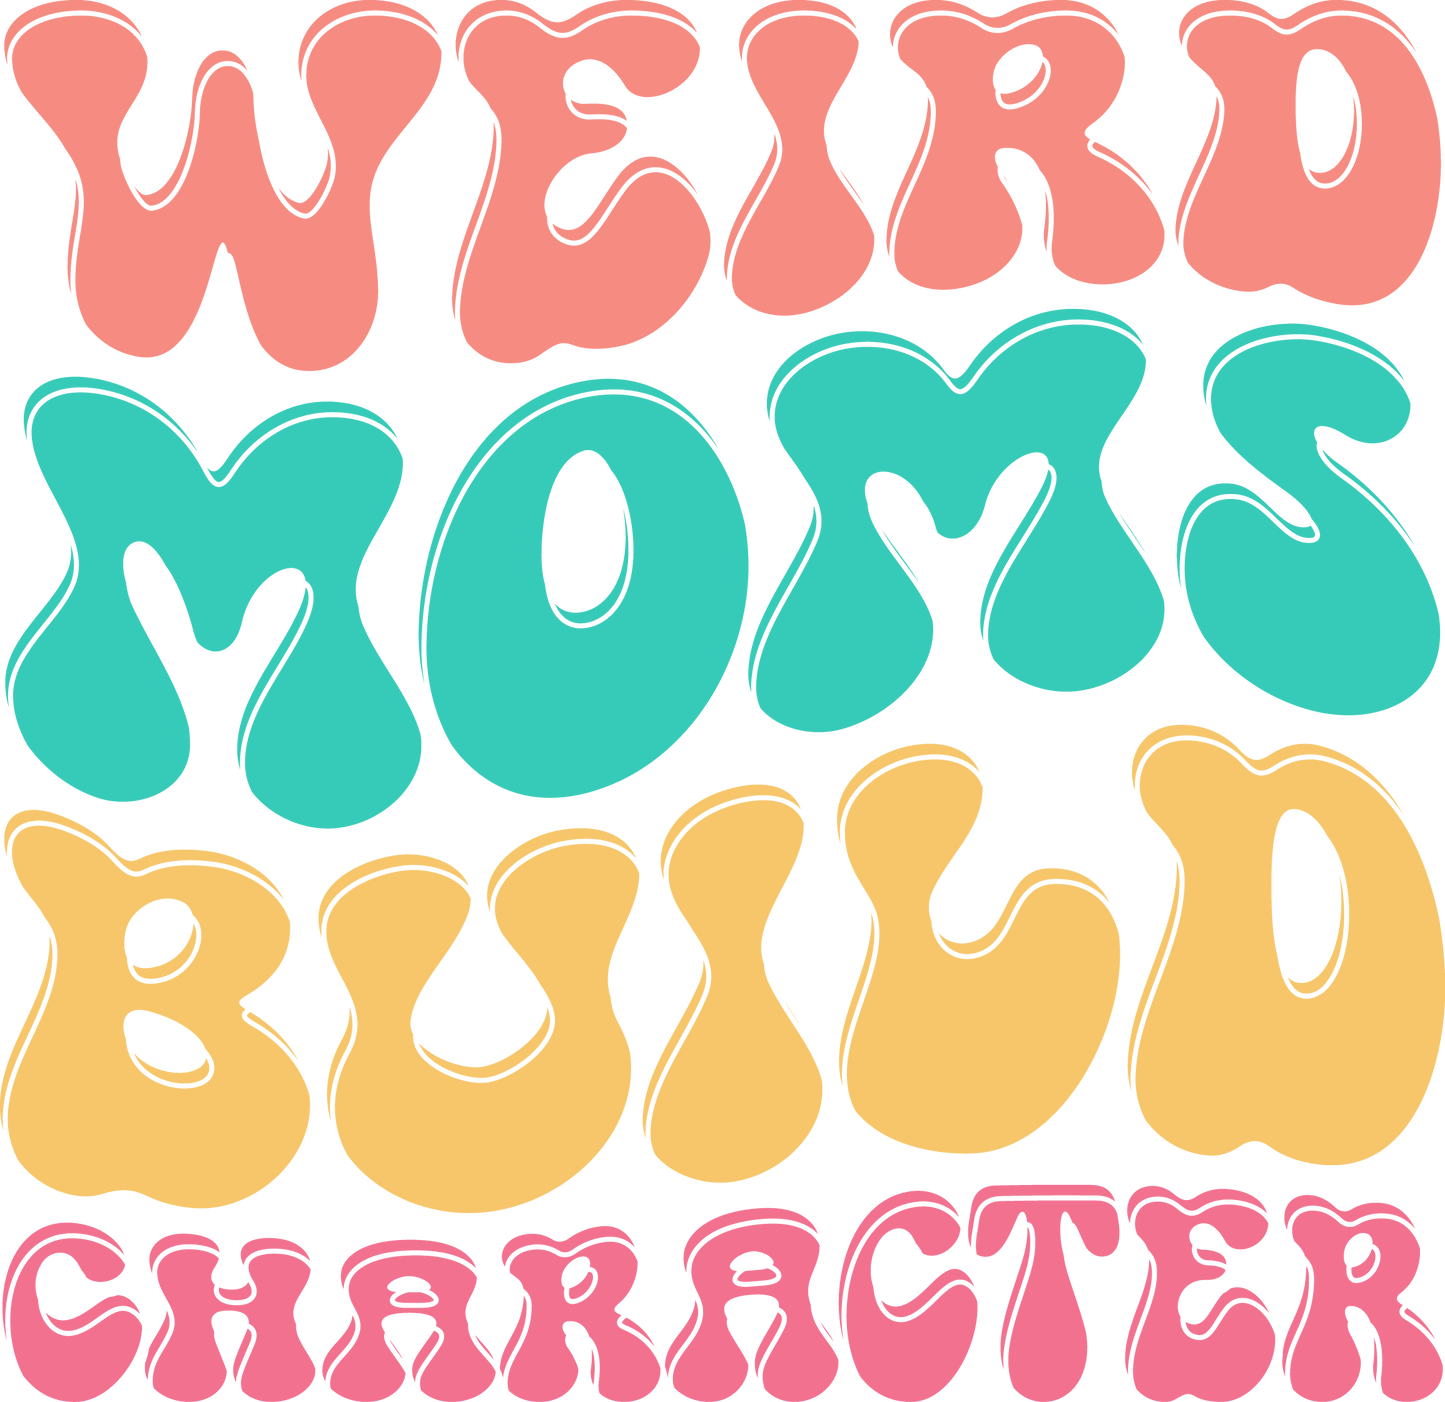 44. Weird Moms Build Character